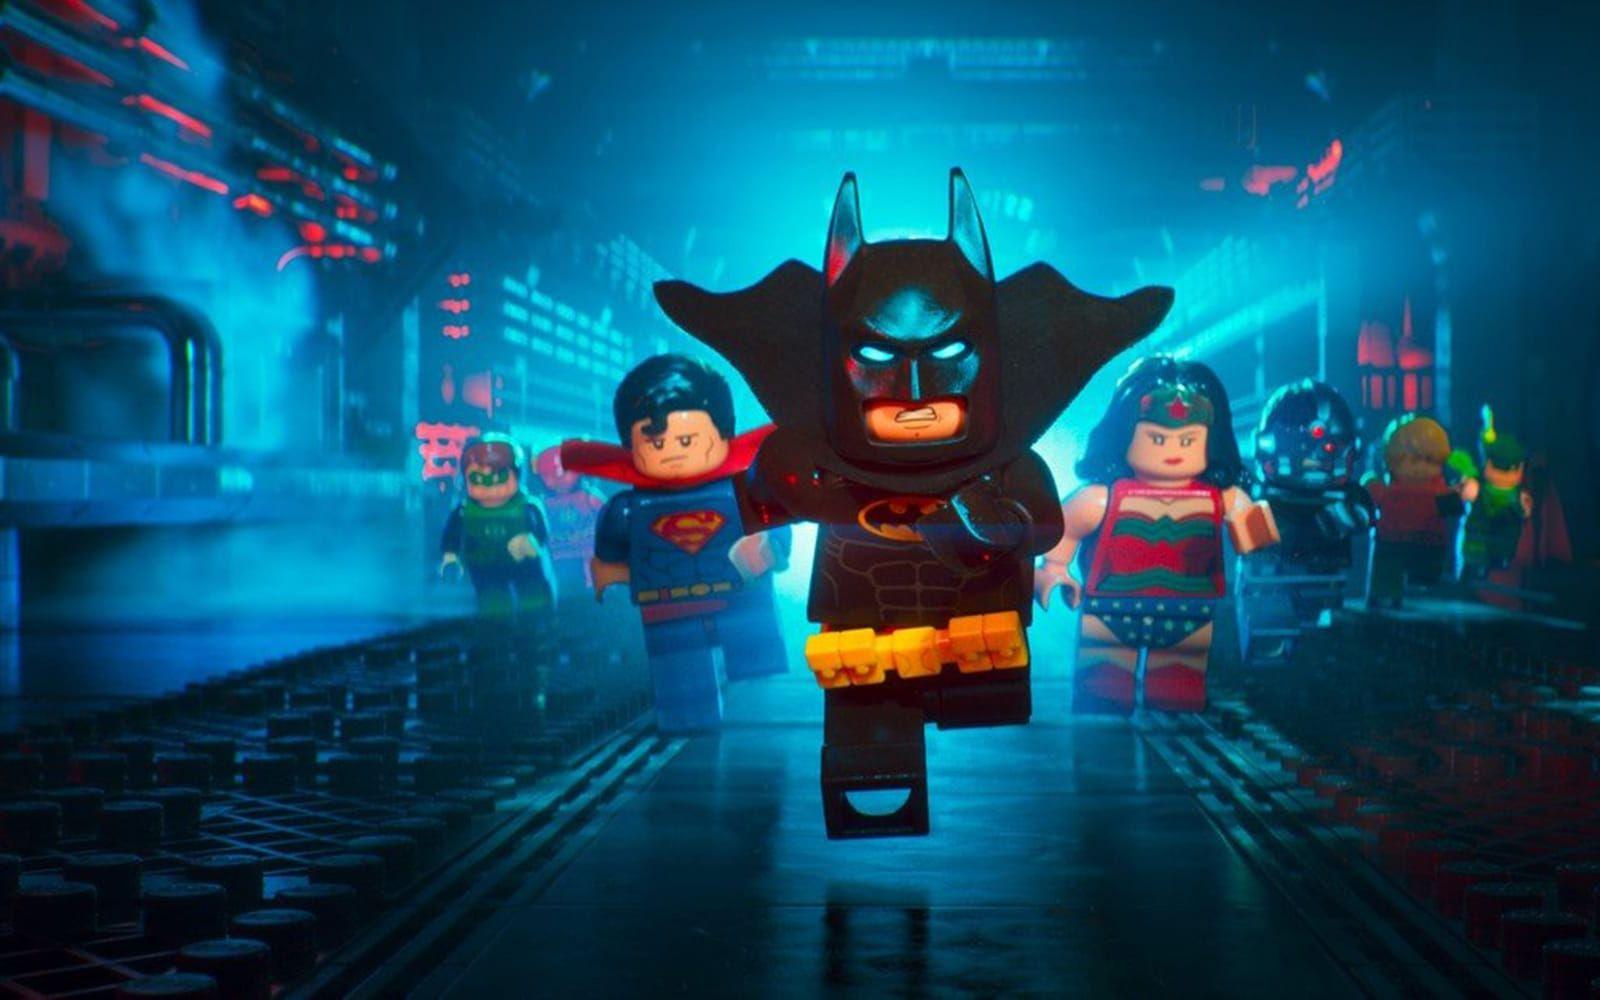 <strong>The Lego Batman Movie.</strong> Batman var en av de roligaste figurerna i den första Lego-filmen och det är Hollywood inte sena med att försöka kapitalisera på. (10 februari). Förväntningar: 2/5.